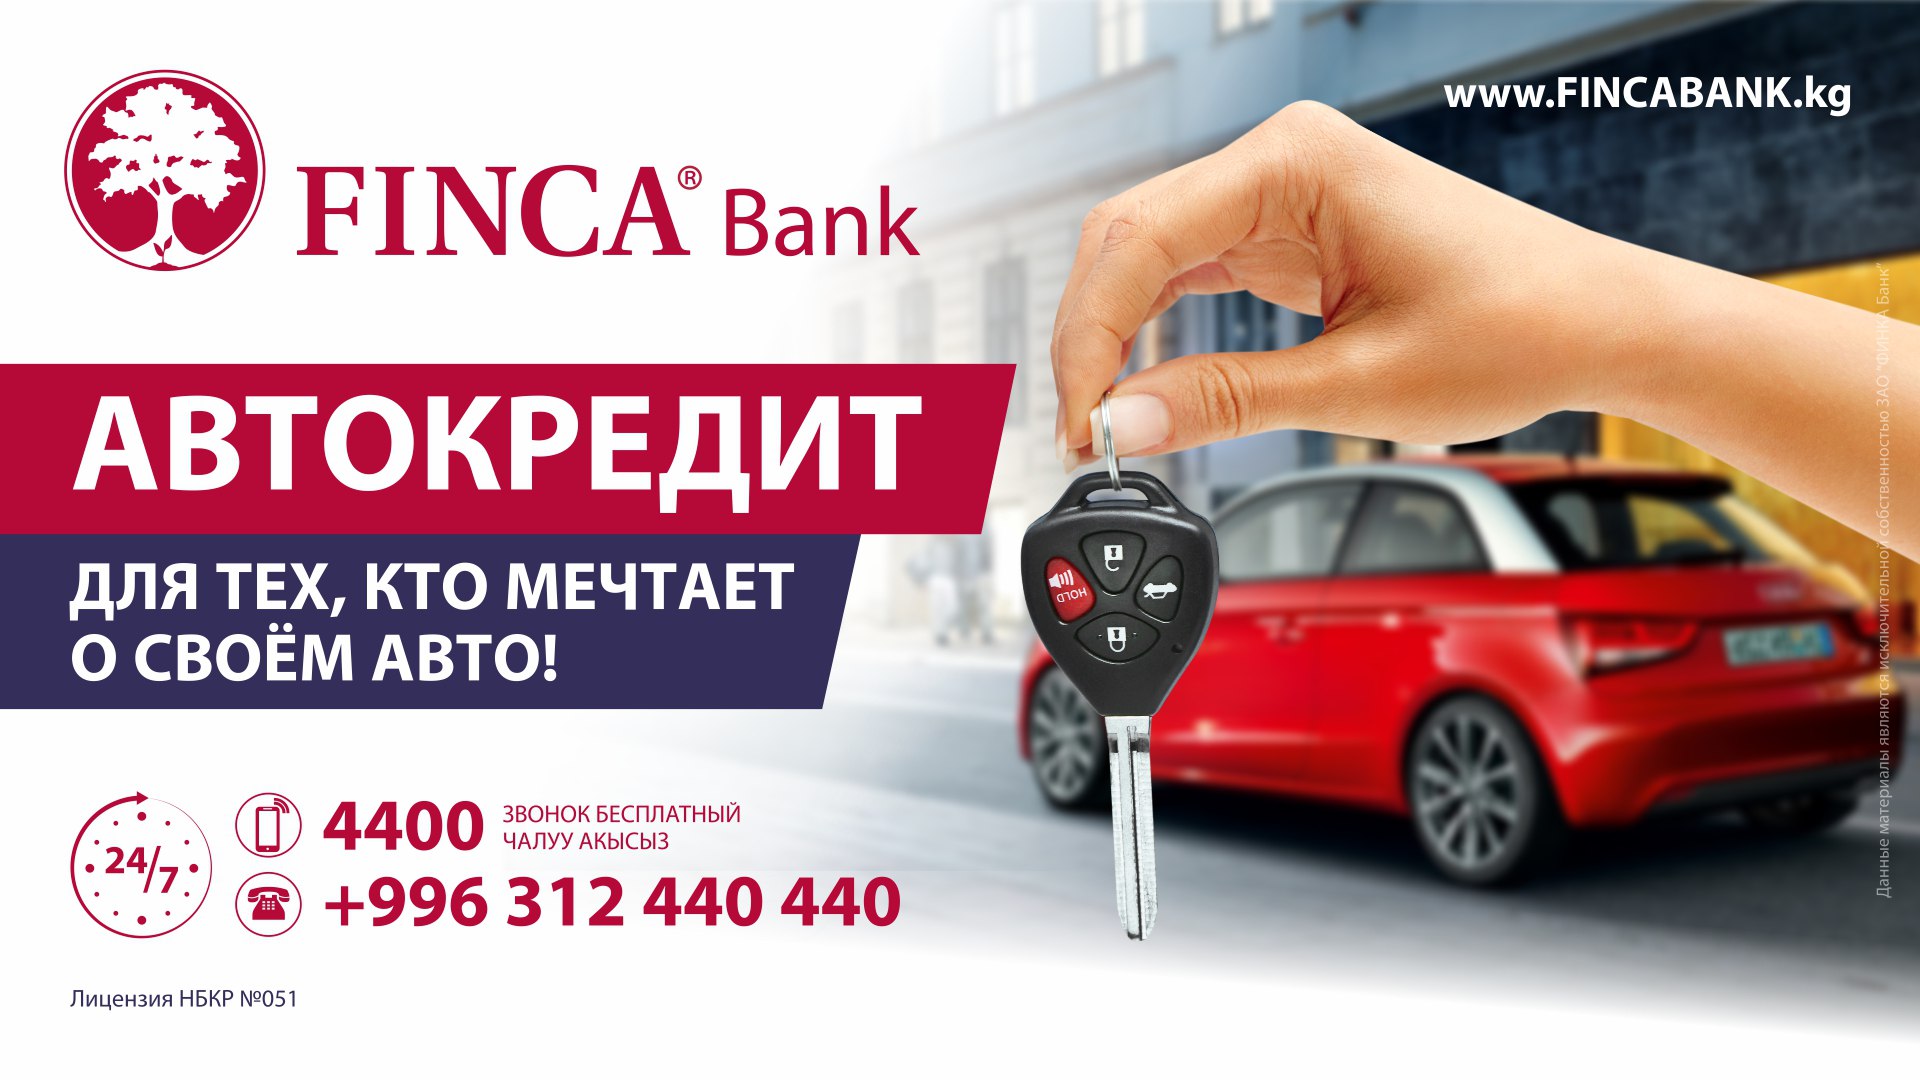 Автокредит от FINCA Bank